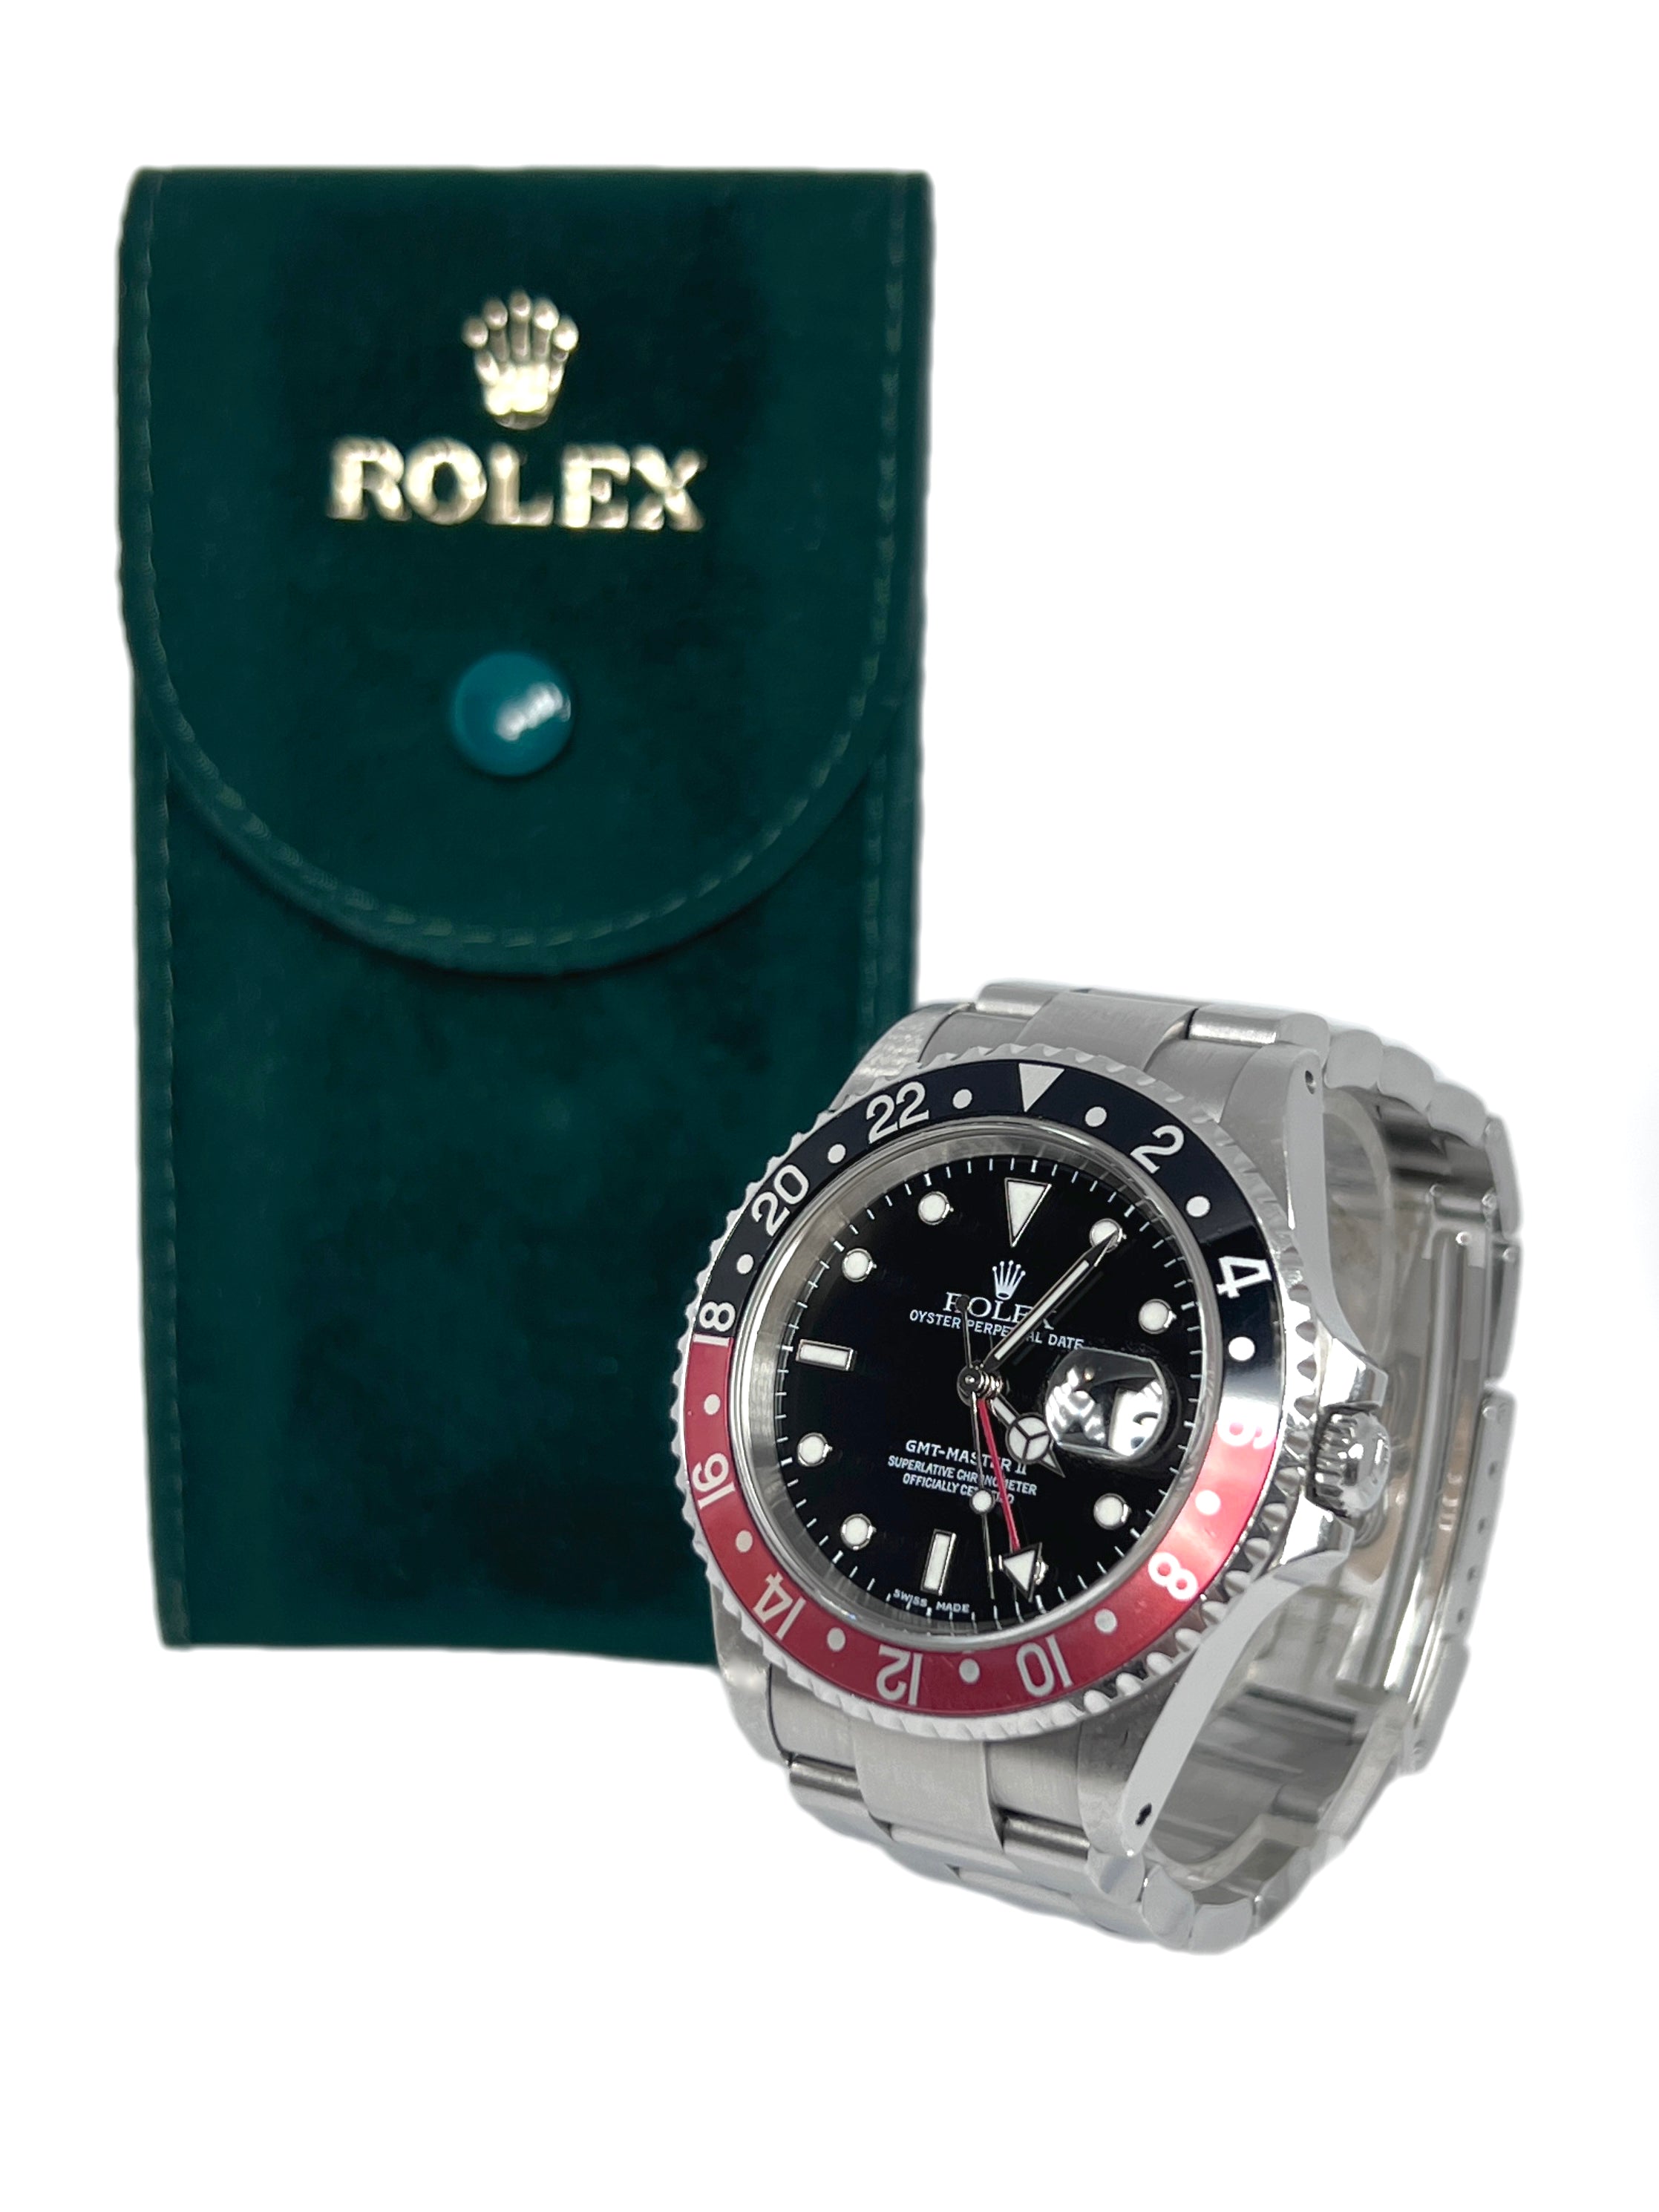 Rolex Oyster Perpetual Date GMT-Master II Coke Oystersteel Men's Watch